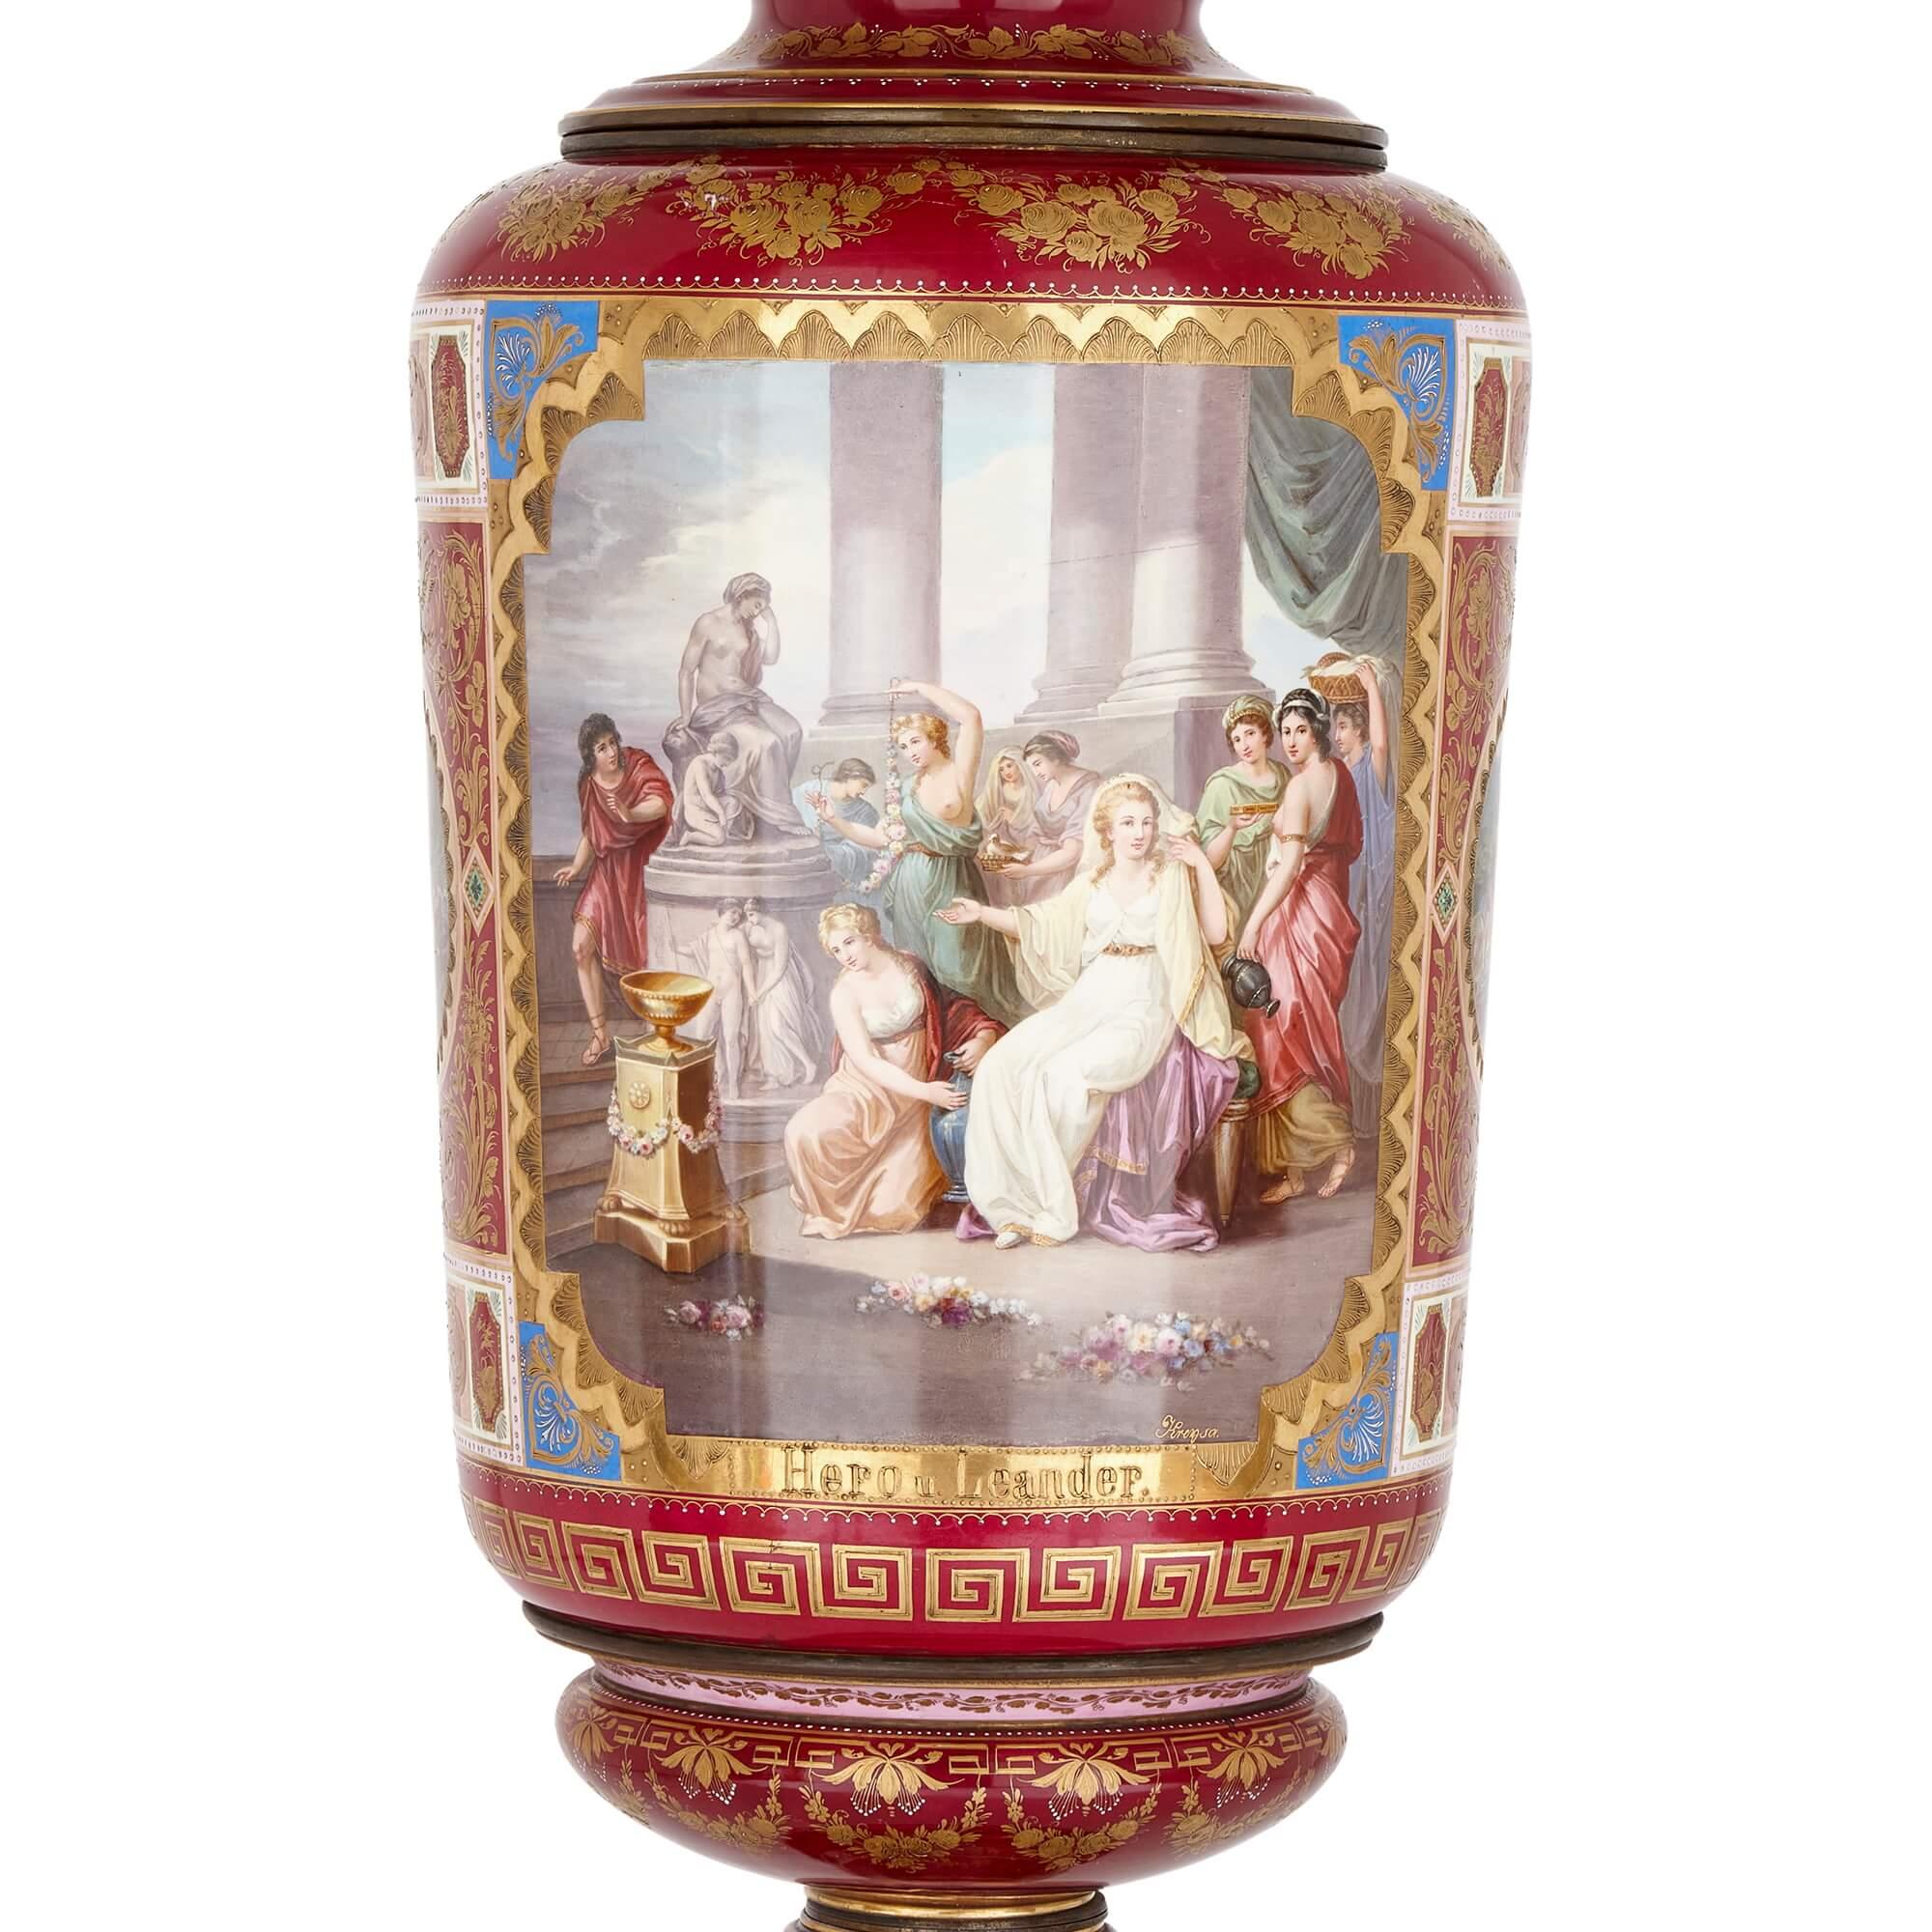 Monumentale Vase aus klassischem Wiener Porzellan
Österreich, 19. Jahrhundert
Höhe 152cm, Durchmesser 41cm

Diese prächtige Vase wurde im 19. Jahrhundert von der berühmten Königlichen Wiener Porzellanmanufaktur hergestellt. Die locker